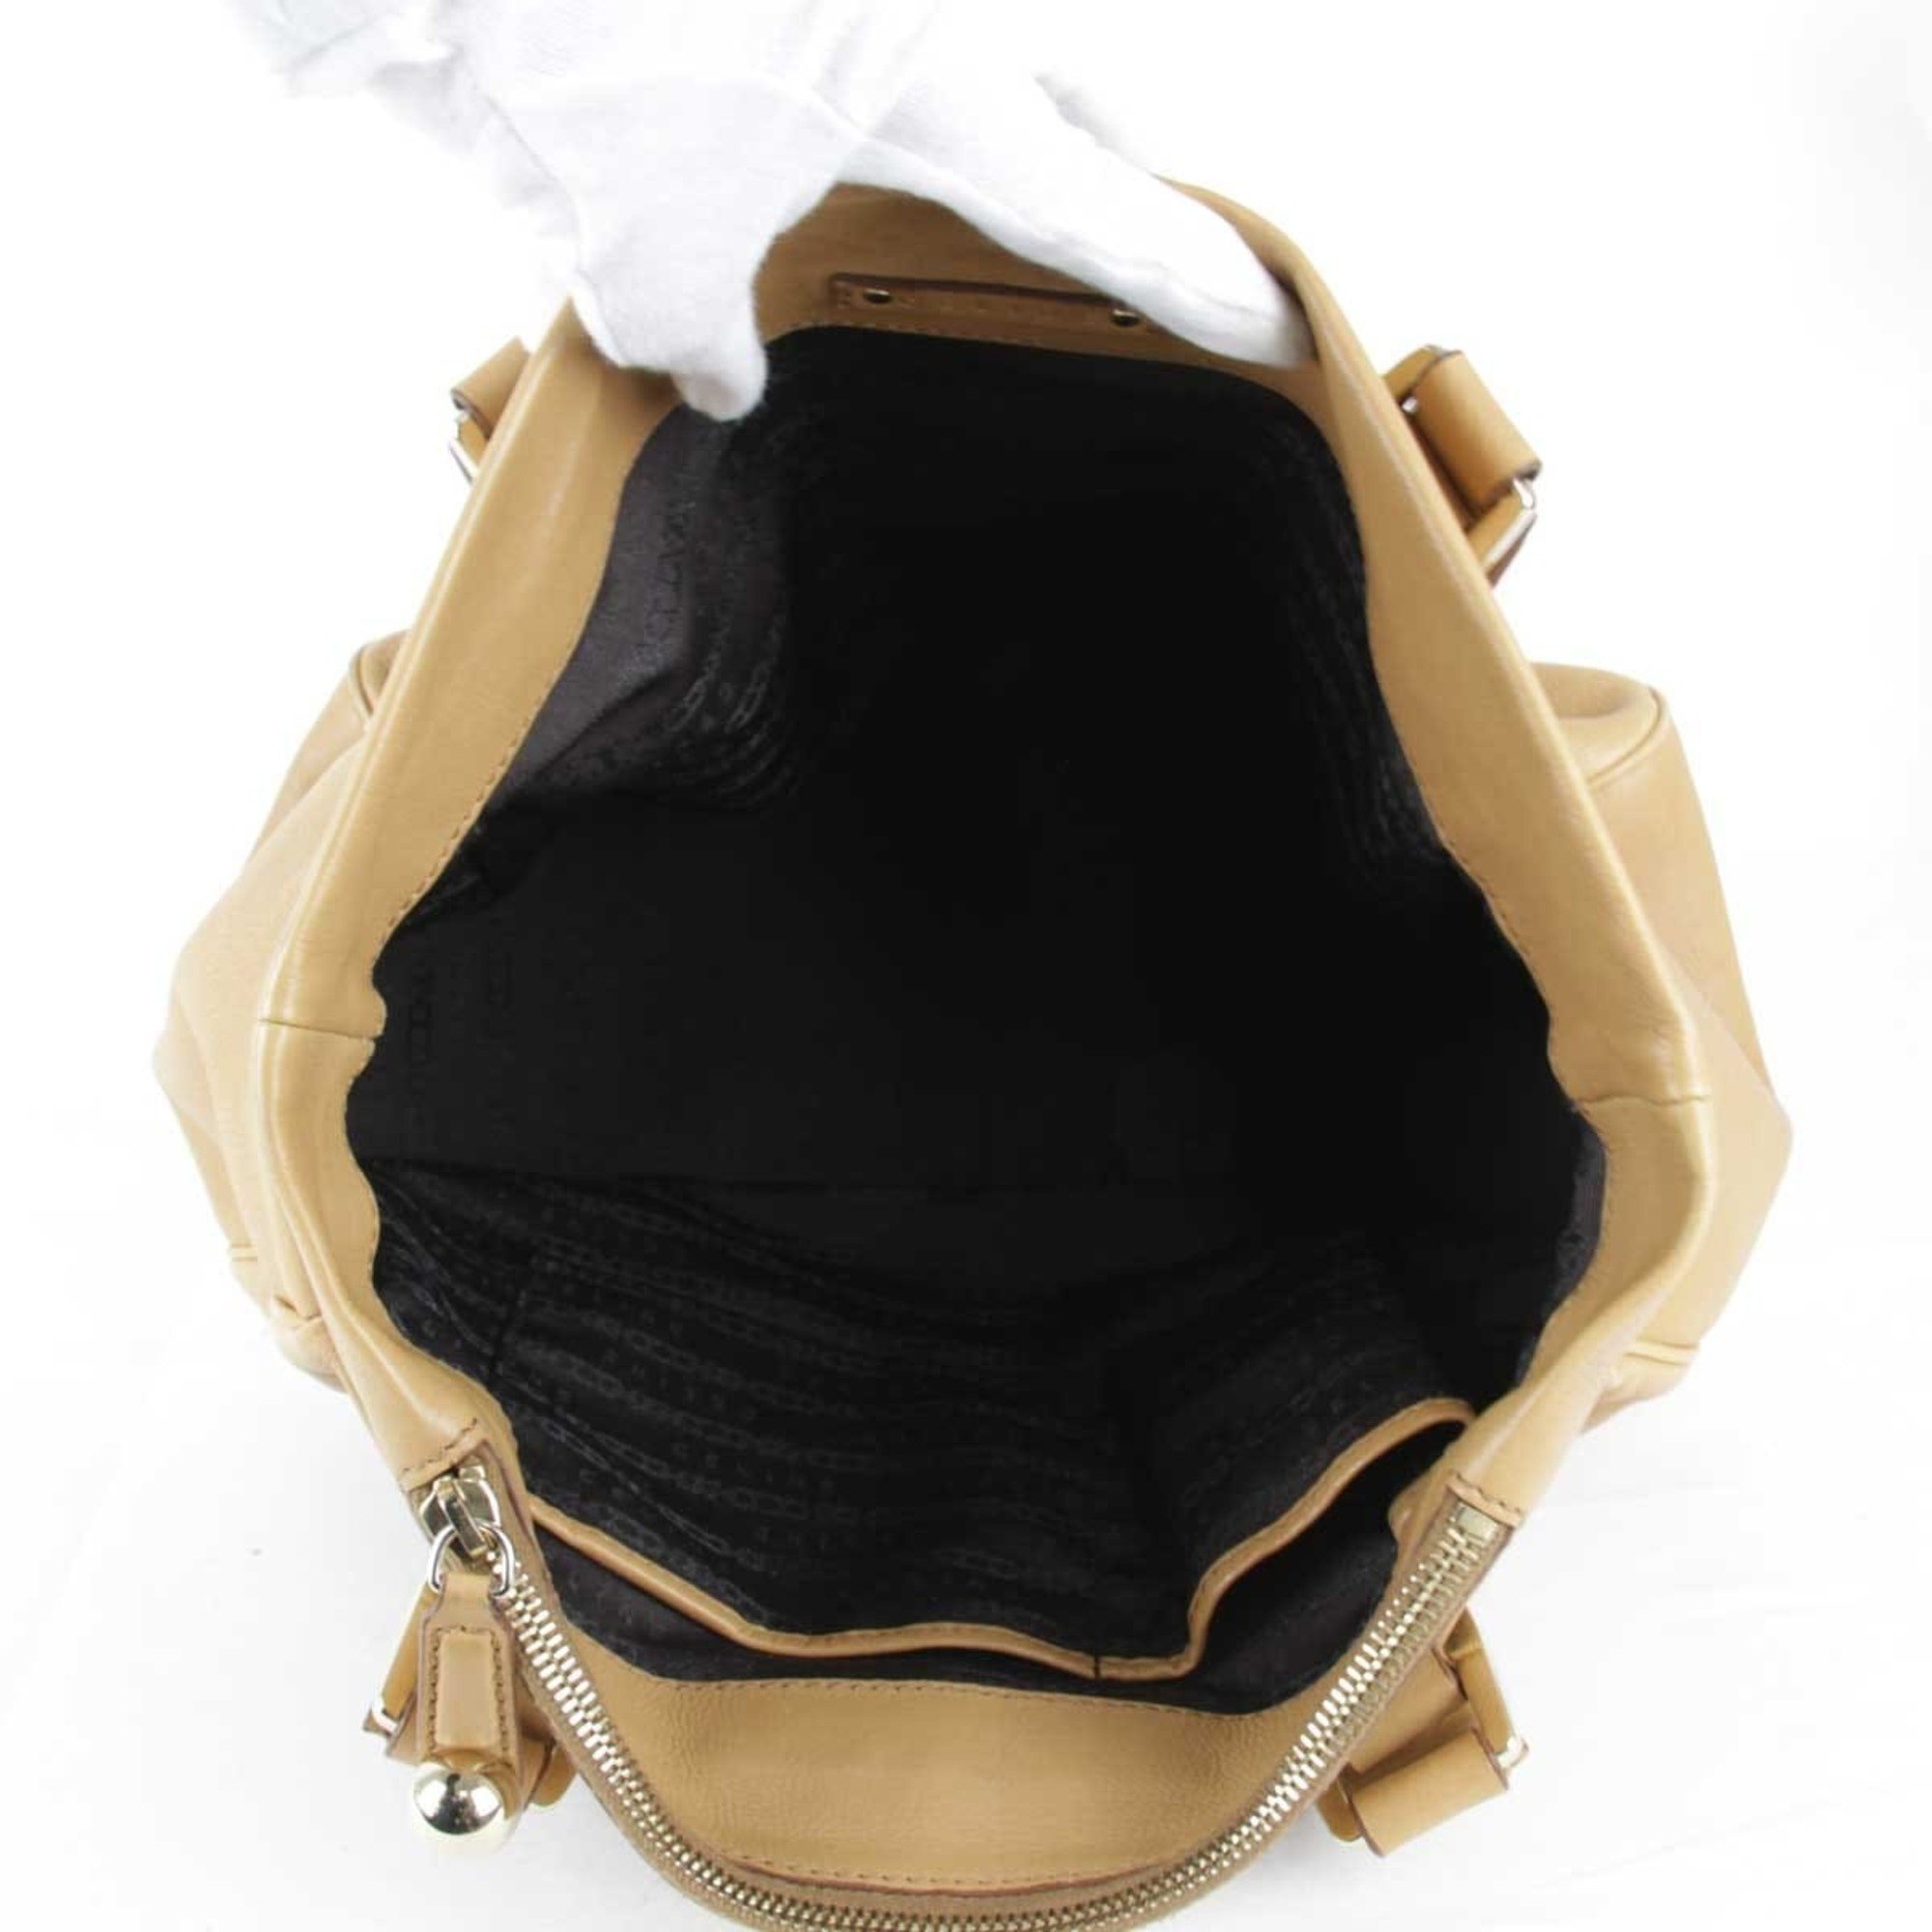 CELINE Handbag Leather Beige Ladies